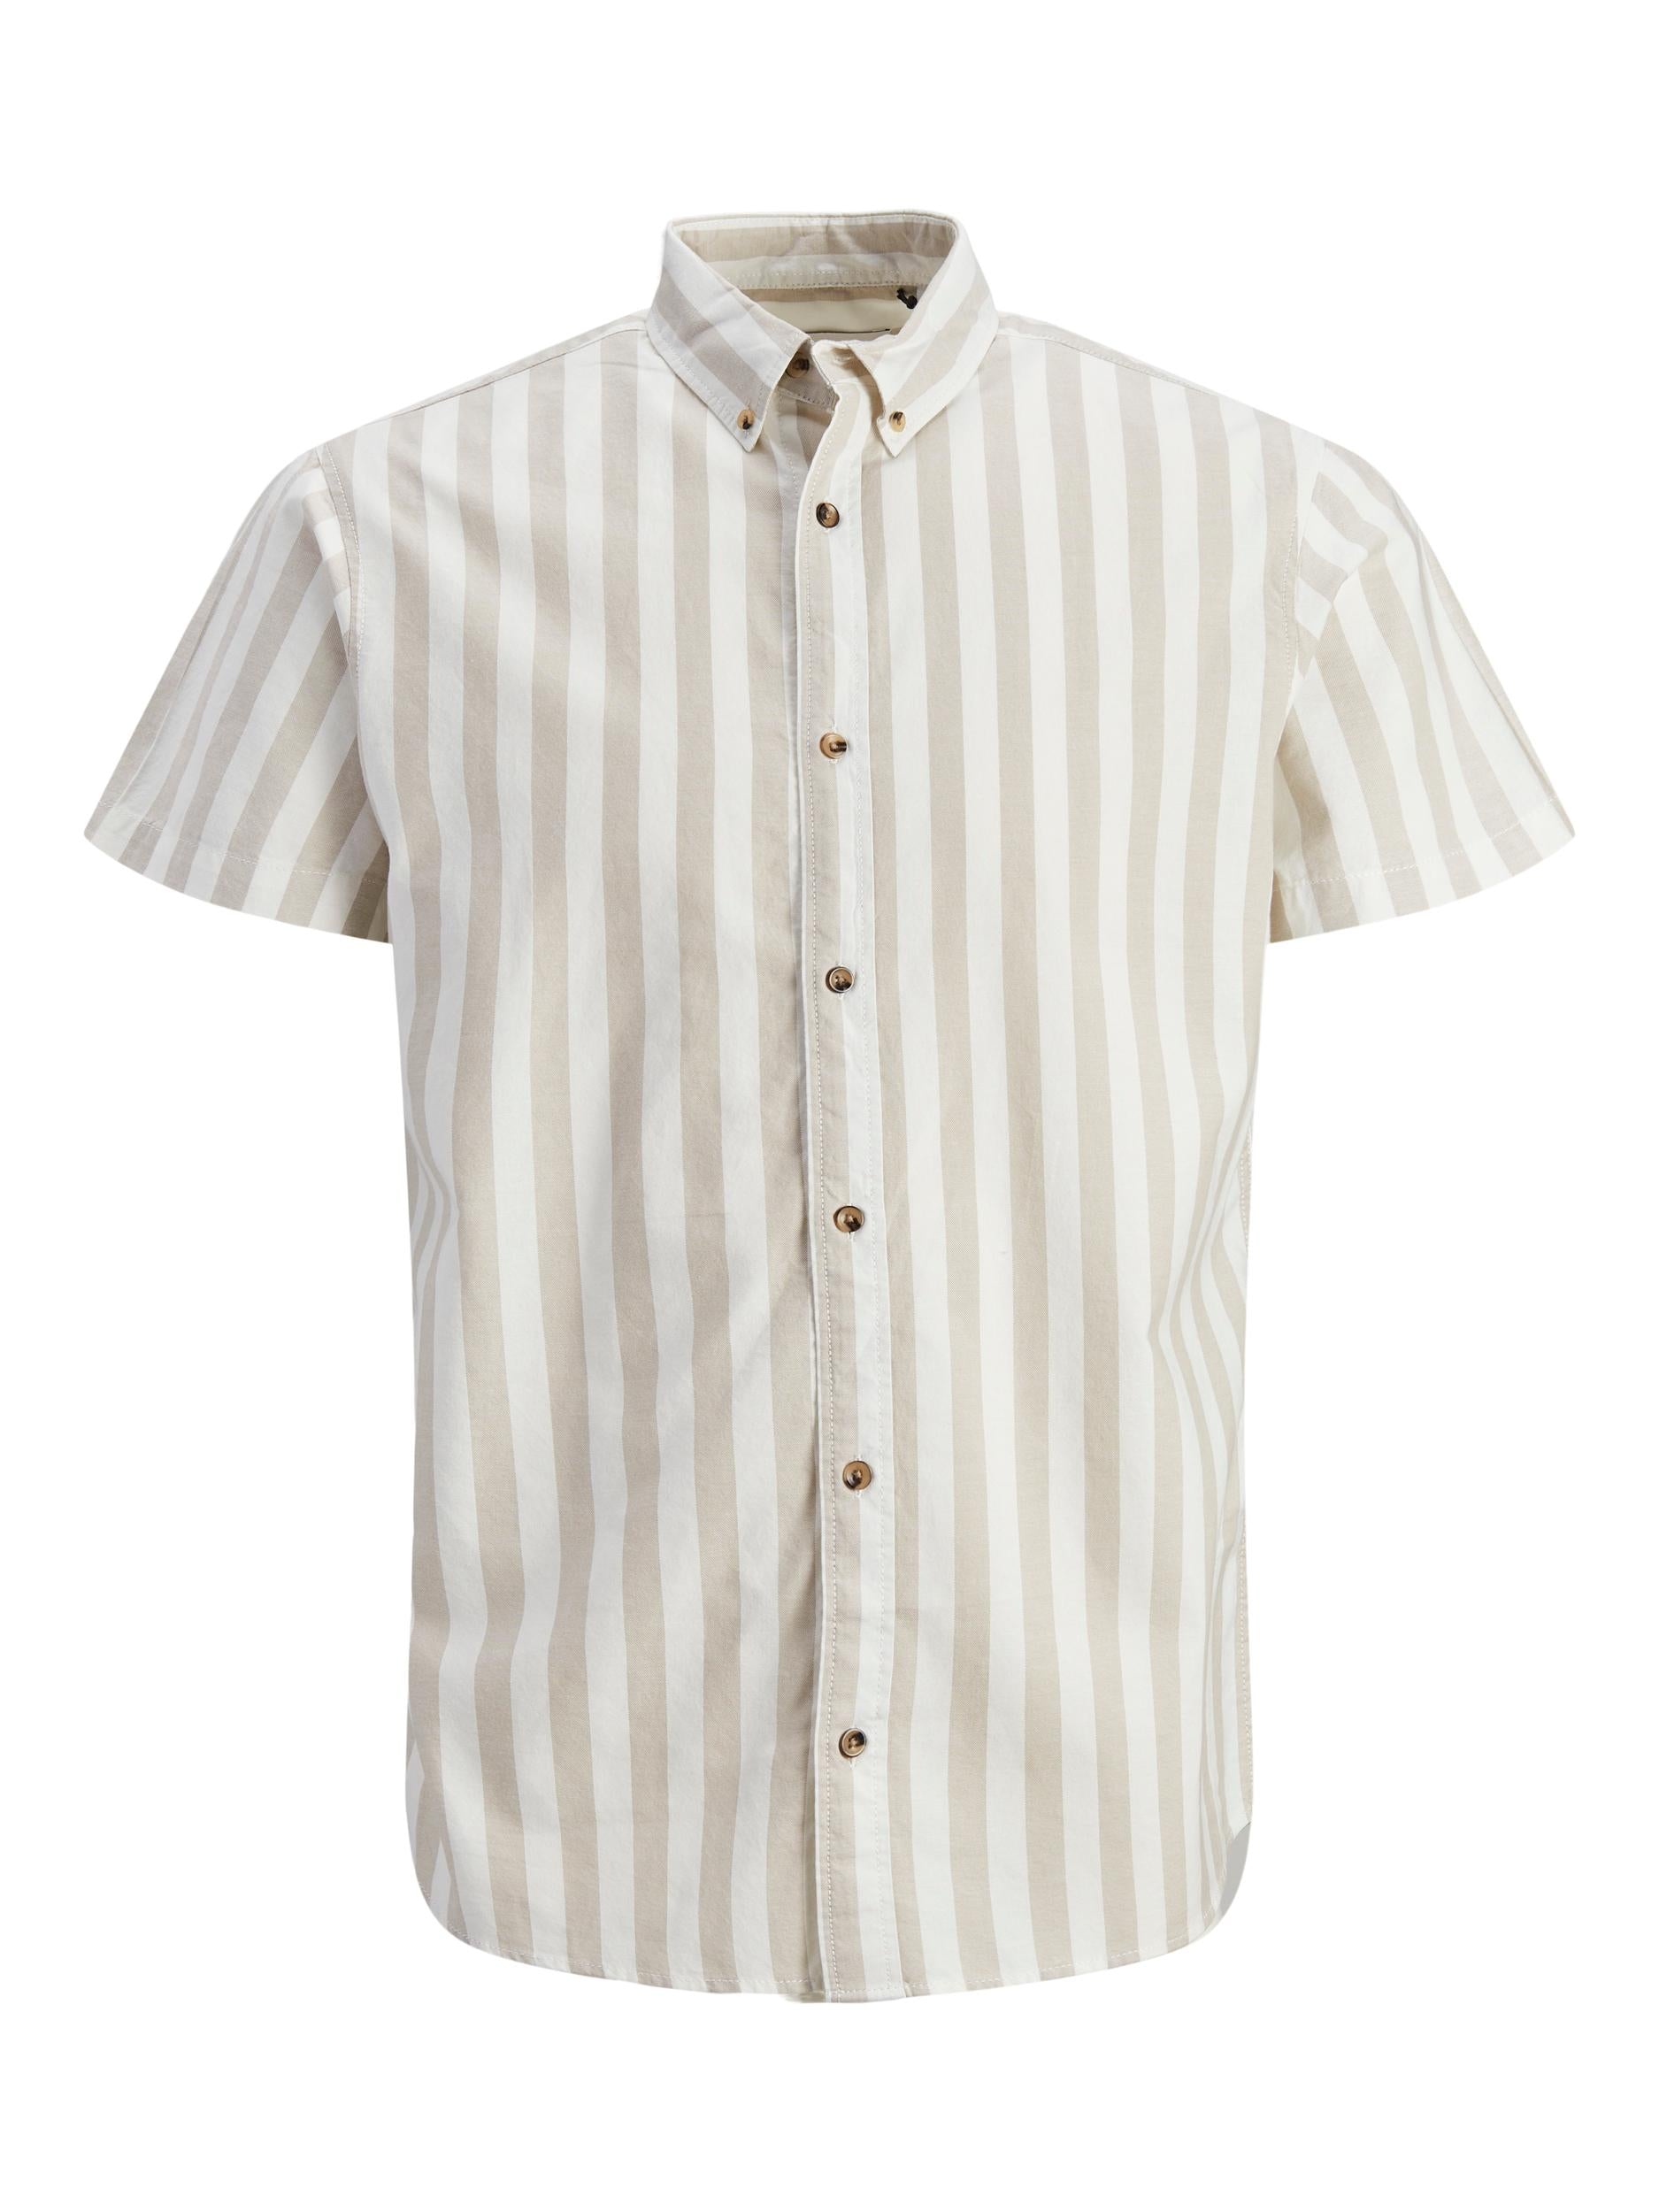 Jack&Jones camicia mezze maniche a righe bianca e beige